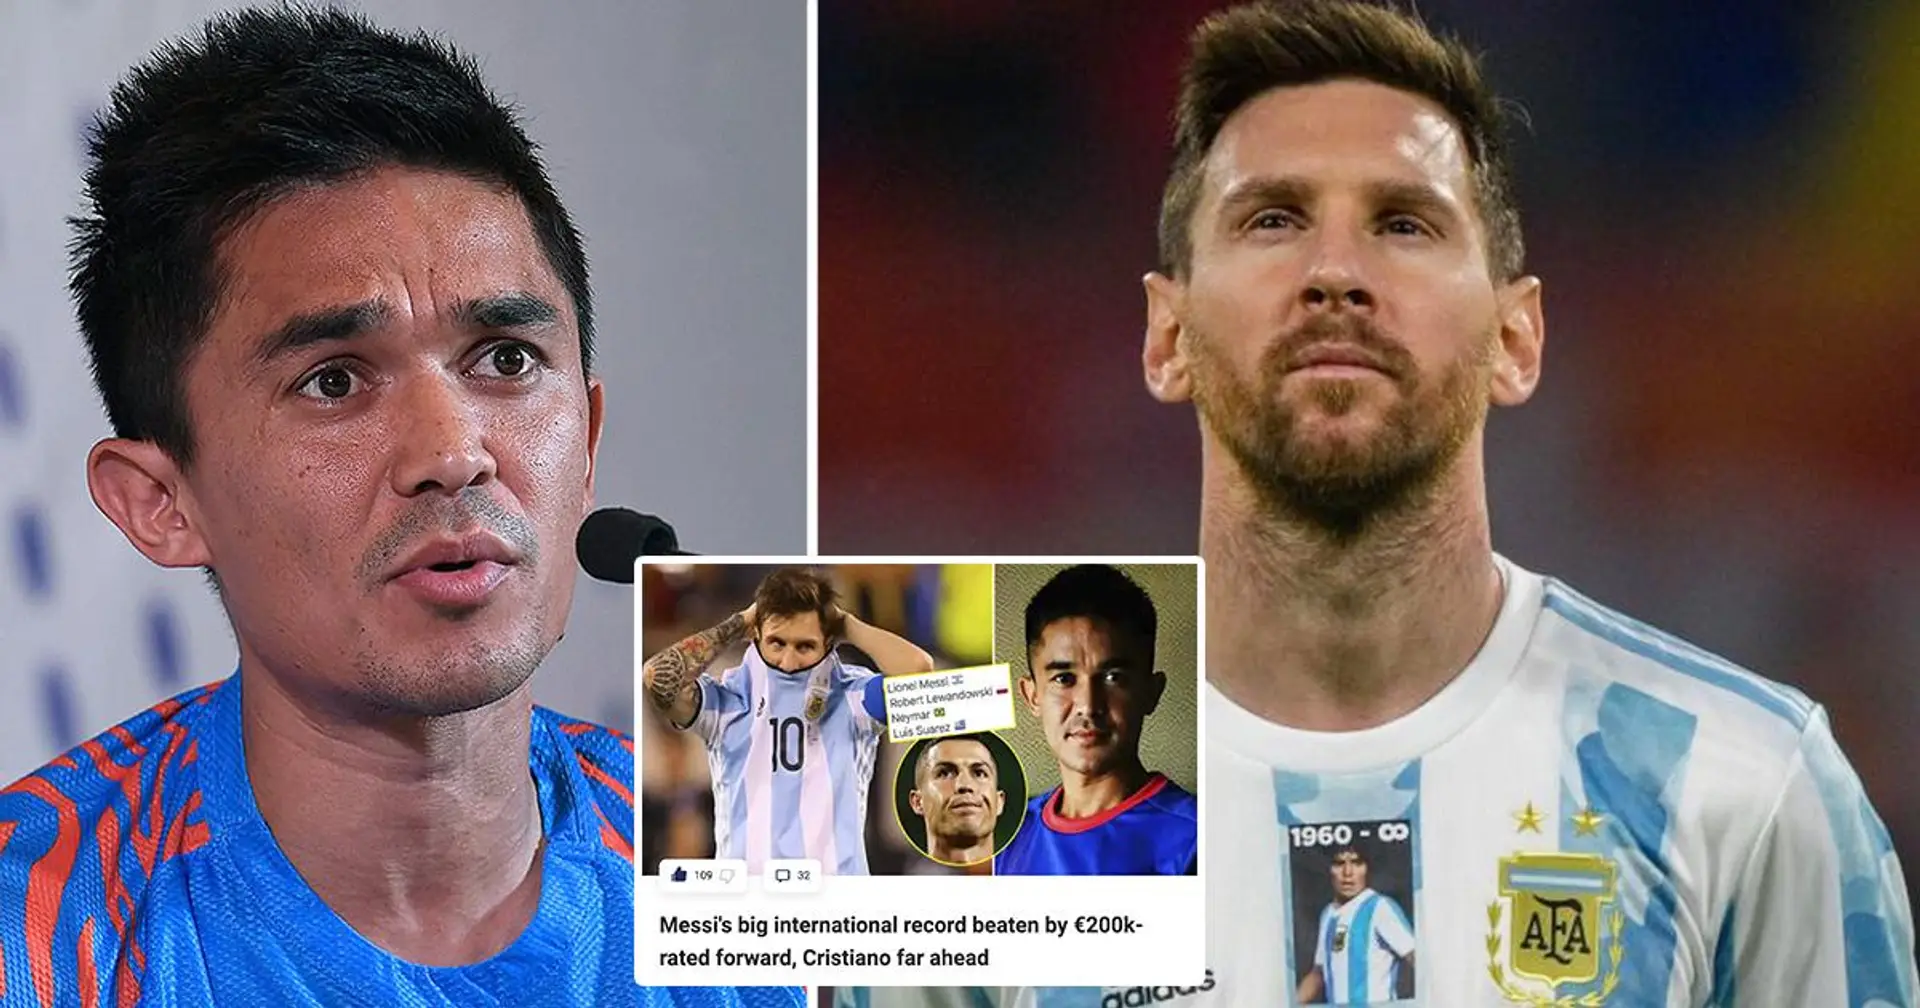 "Ne me comparez pas à Messi": Un attaquant évalué à 200 000 € se confie sur le fait d'avoir battu un record international de Leo